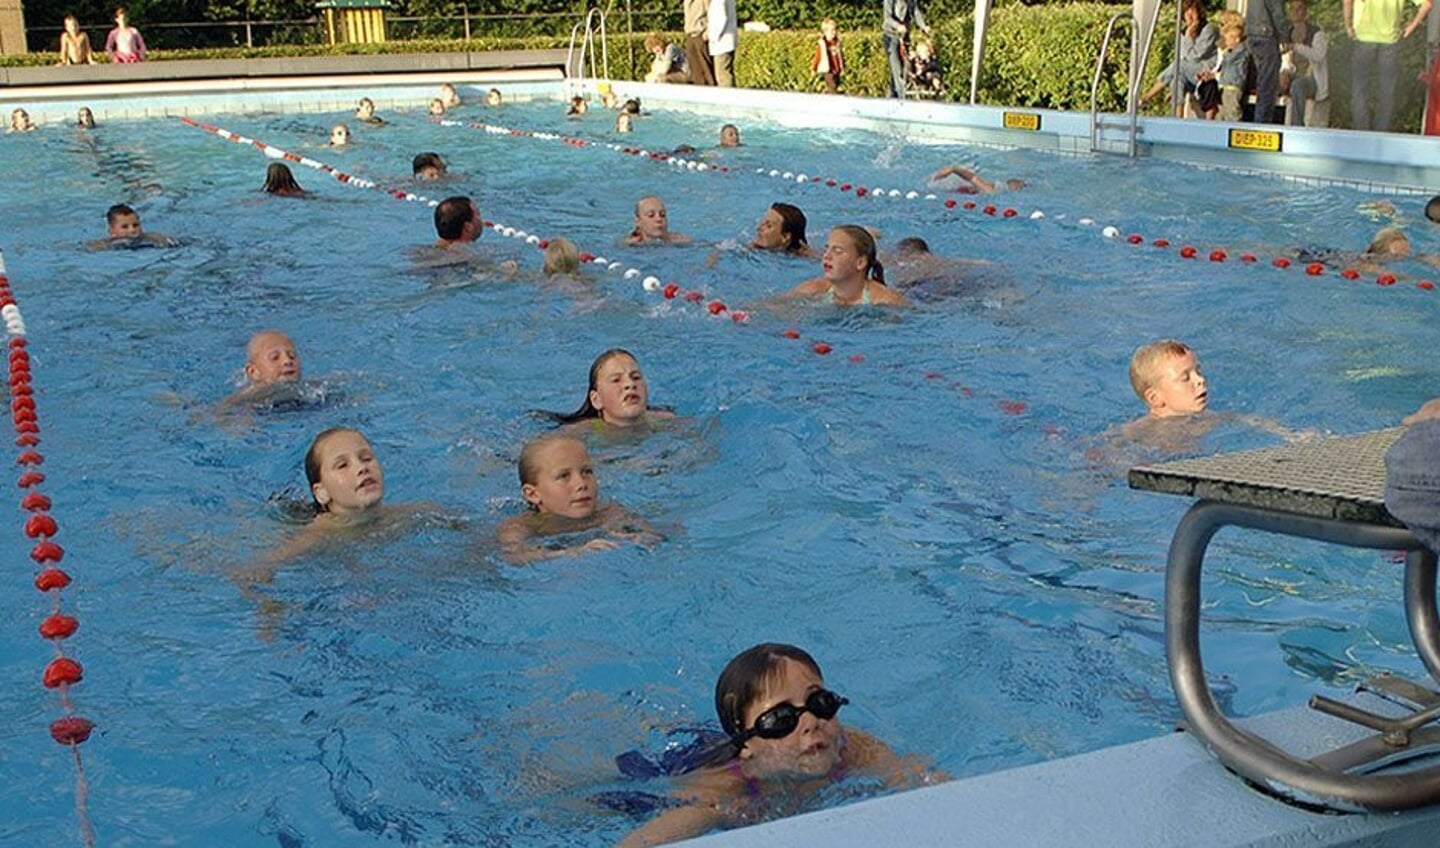 Zwembad Werkina is zaterdag het decor van de Watergames